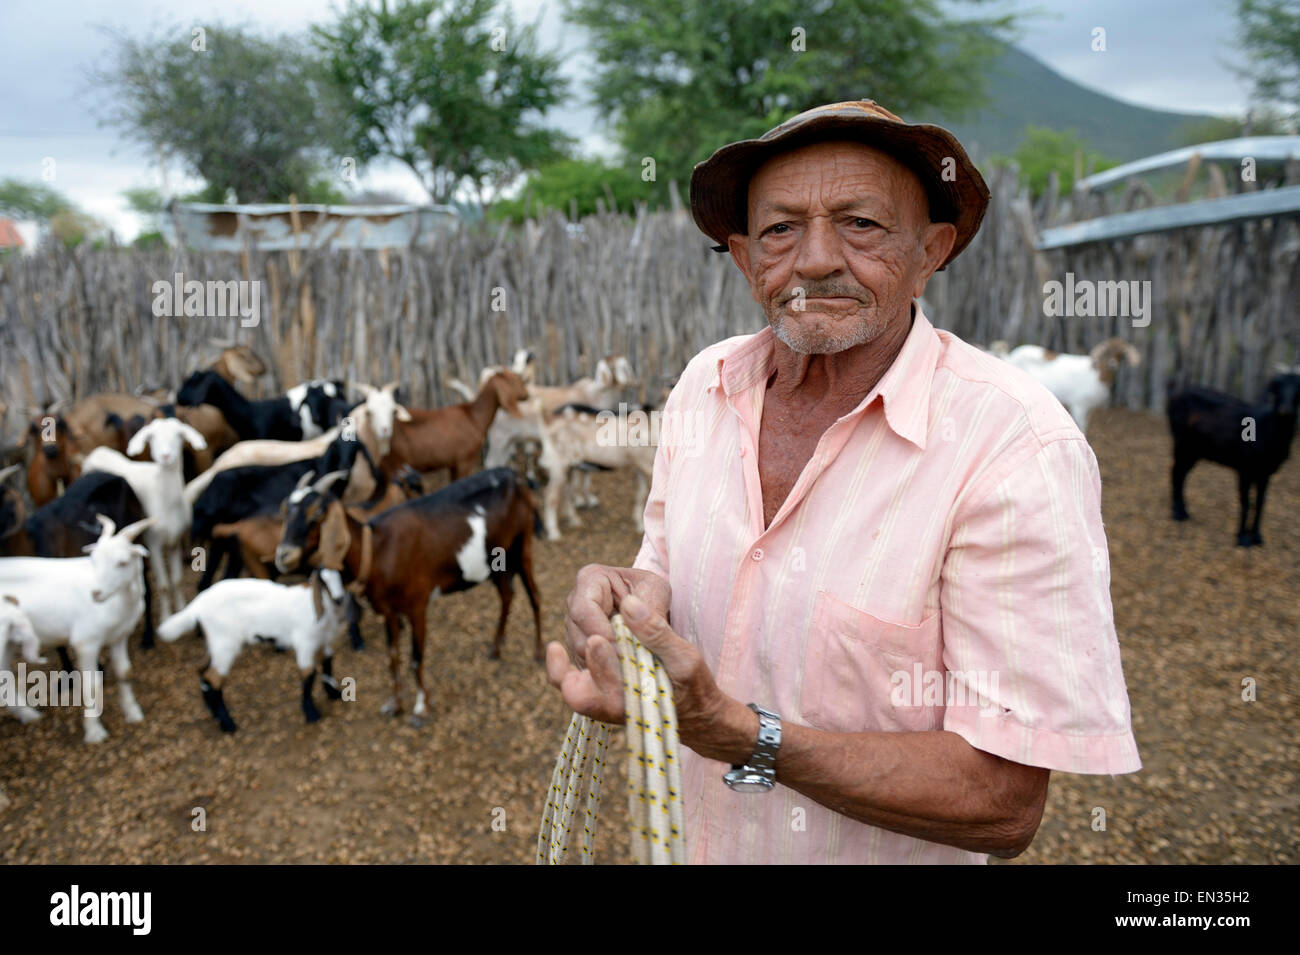 Homme, 76 ans, l'élevage de chèvres (Capra hircus aegagrus), Caladinho, Uaua, Bahia, Brésil Banque D'Images